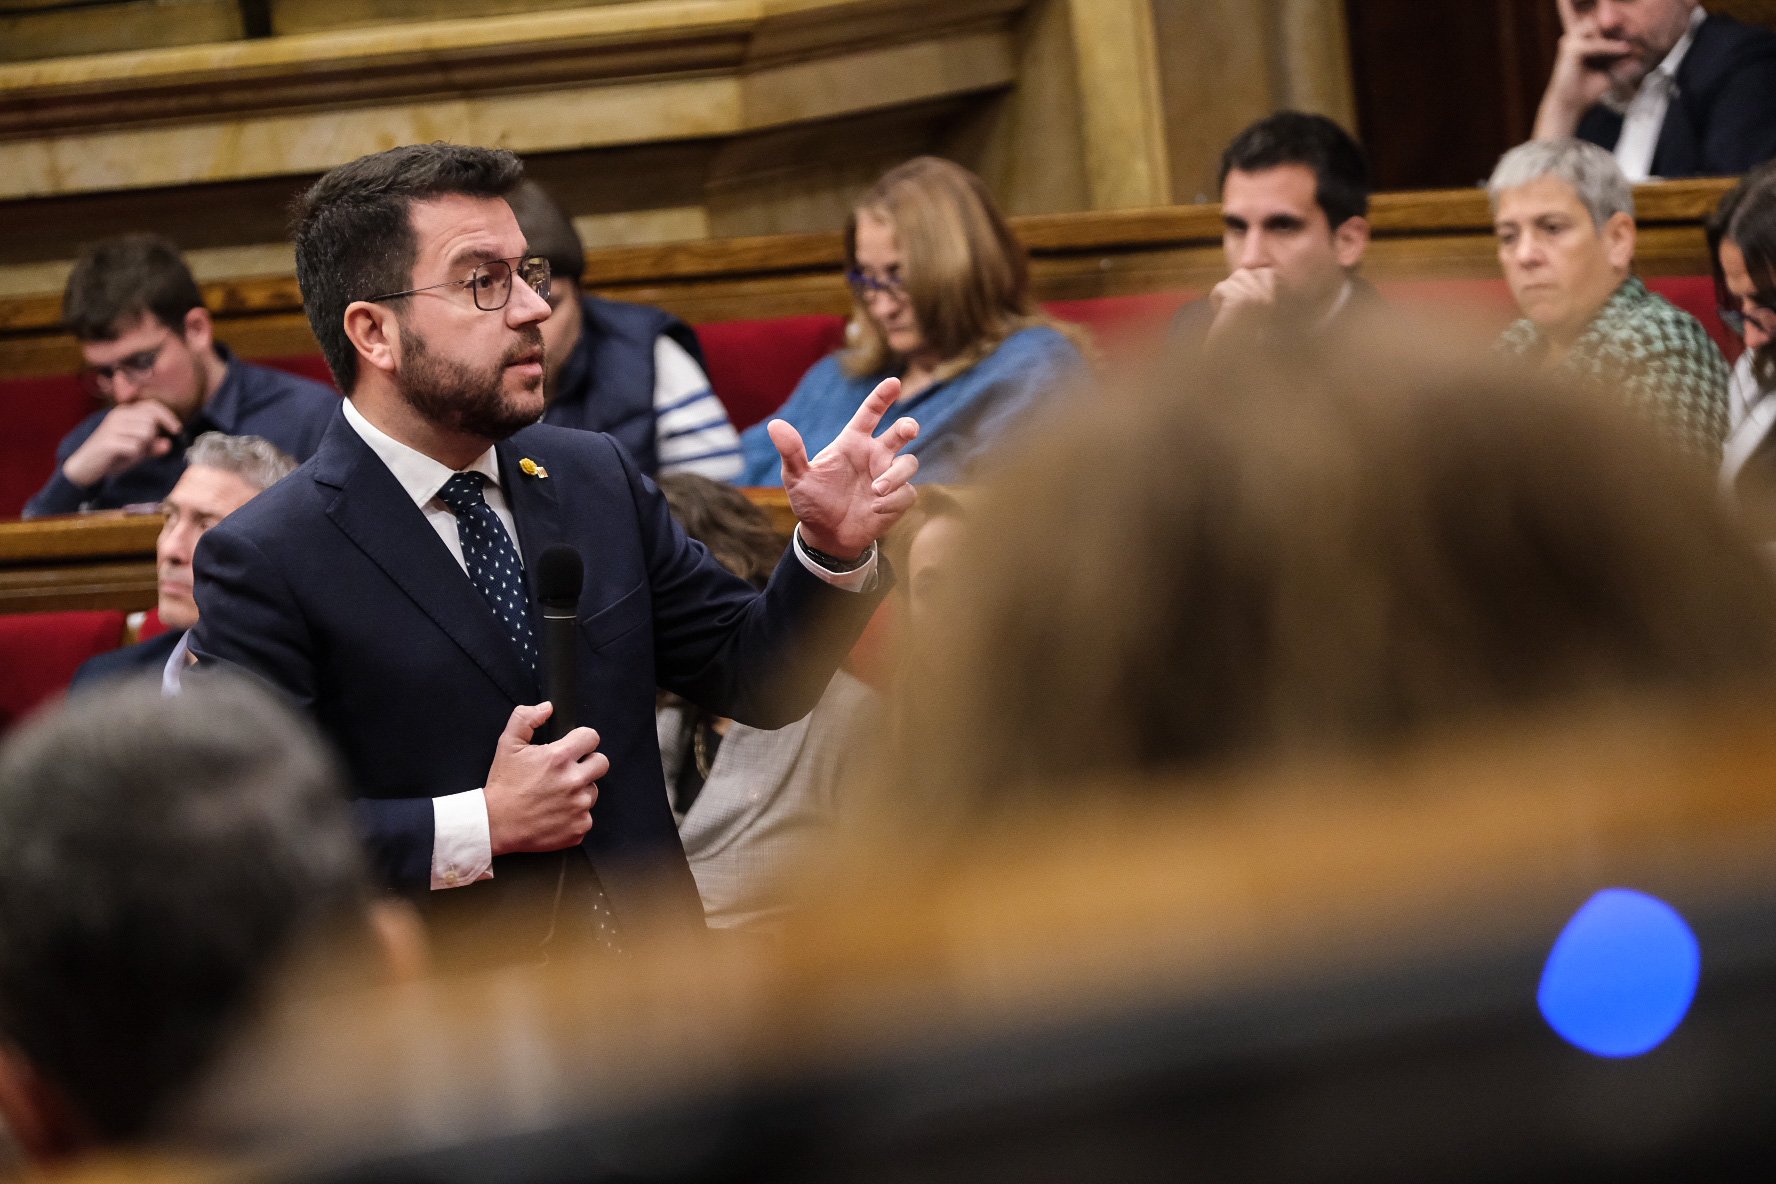 La sequera esquitxa el debat parlamentari mentre Aragonès declina fer una "guerra de l'aigua"